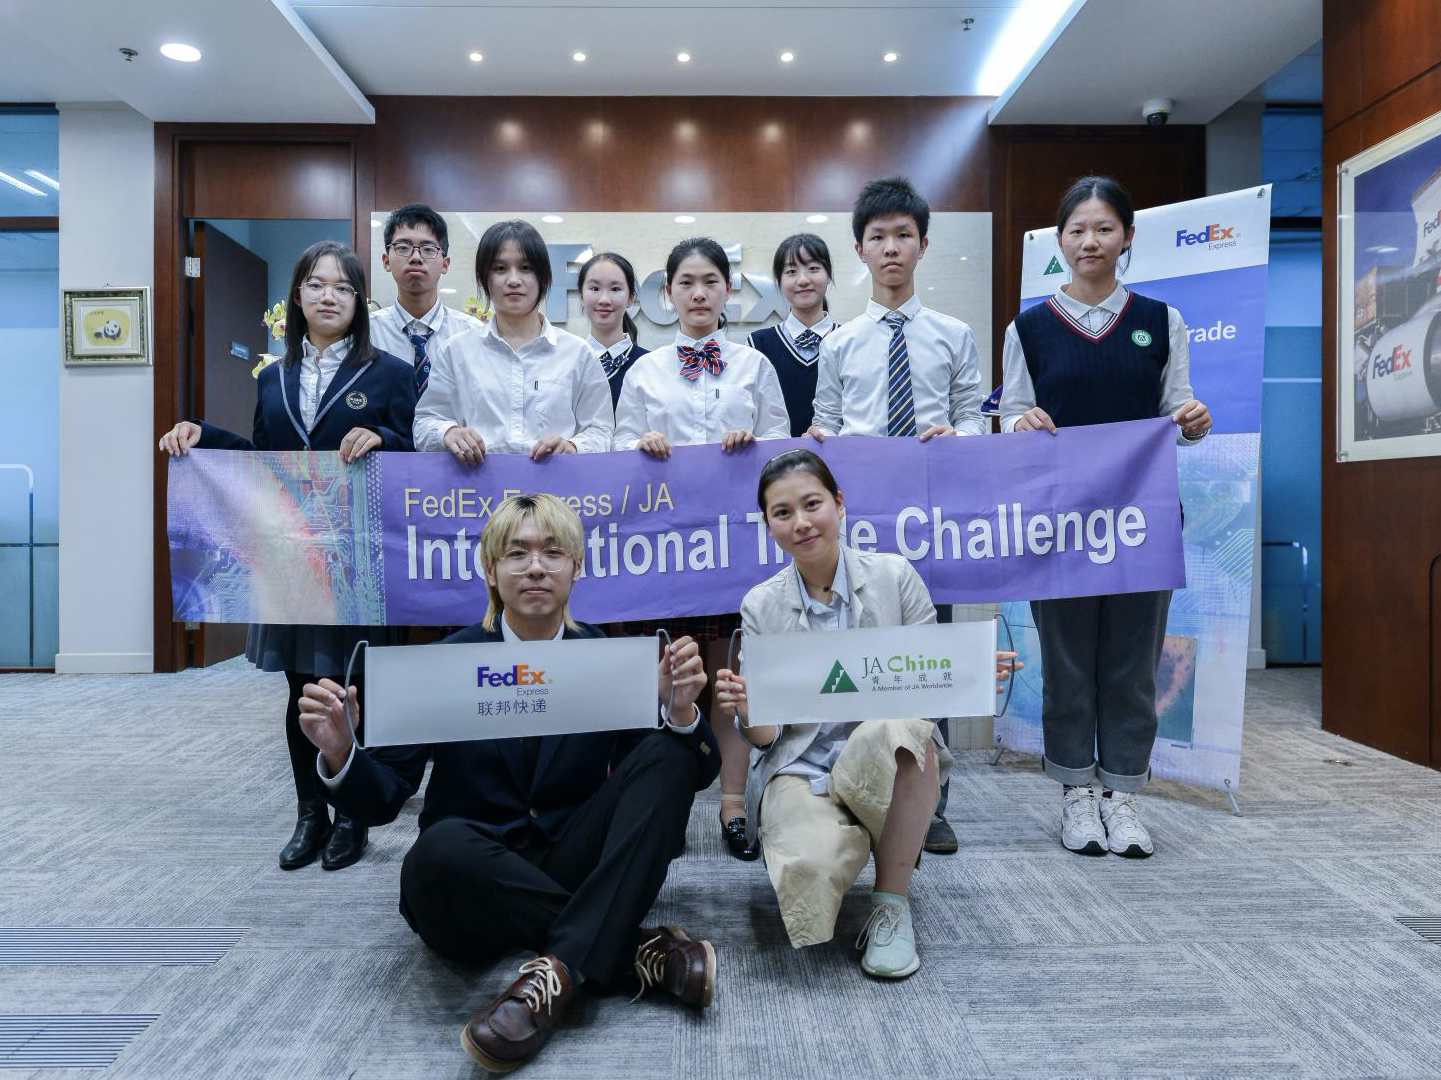 “2020联邦快递/青年成就国际贸易挑战赛” 中国区决赛完美收官